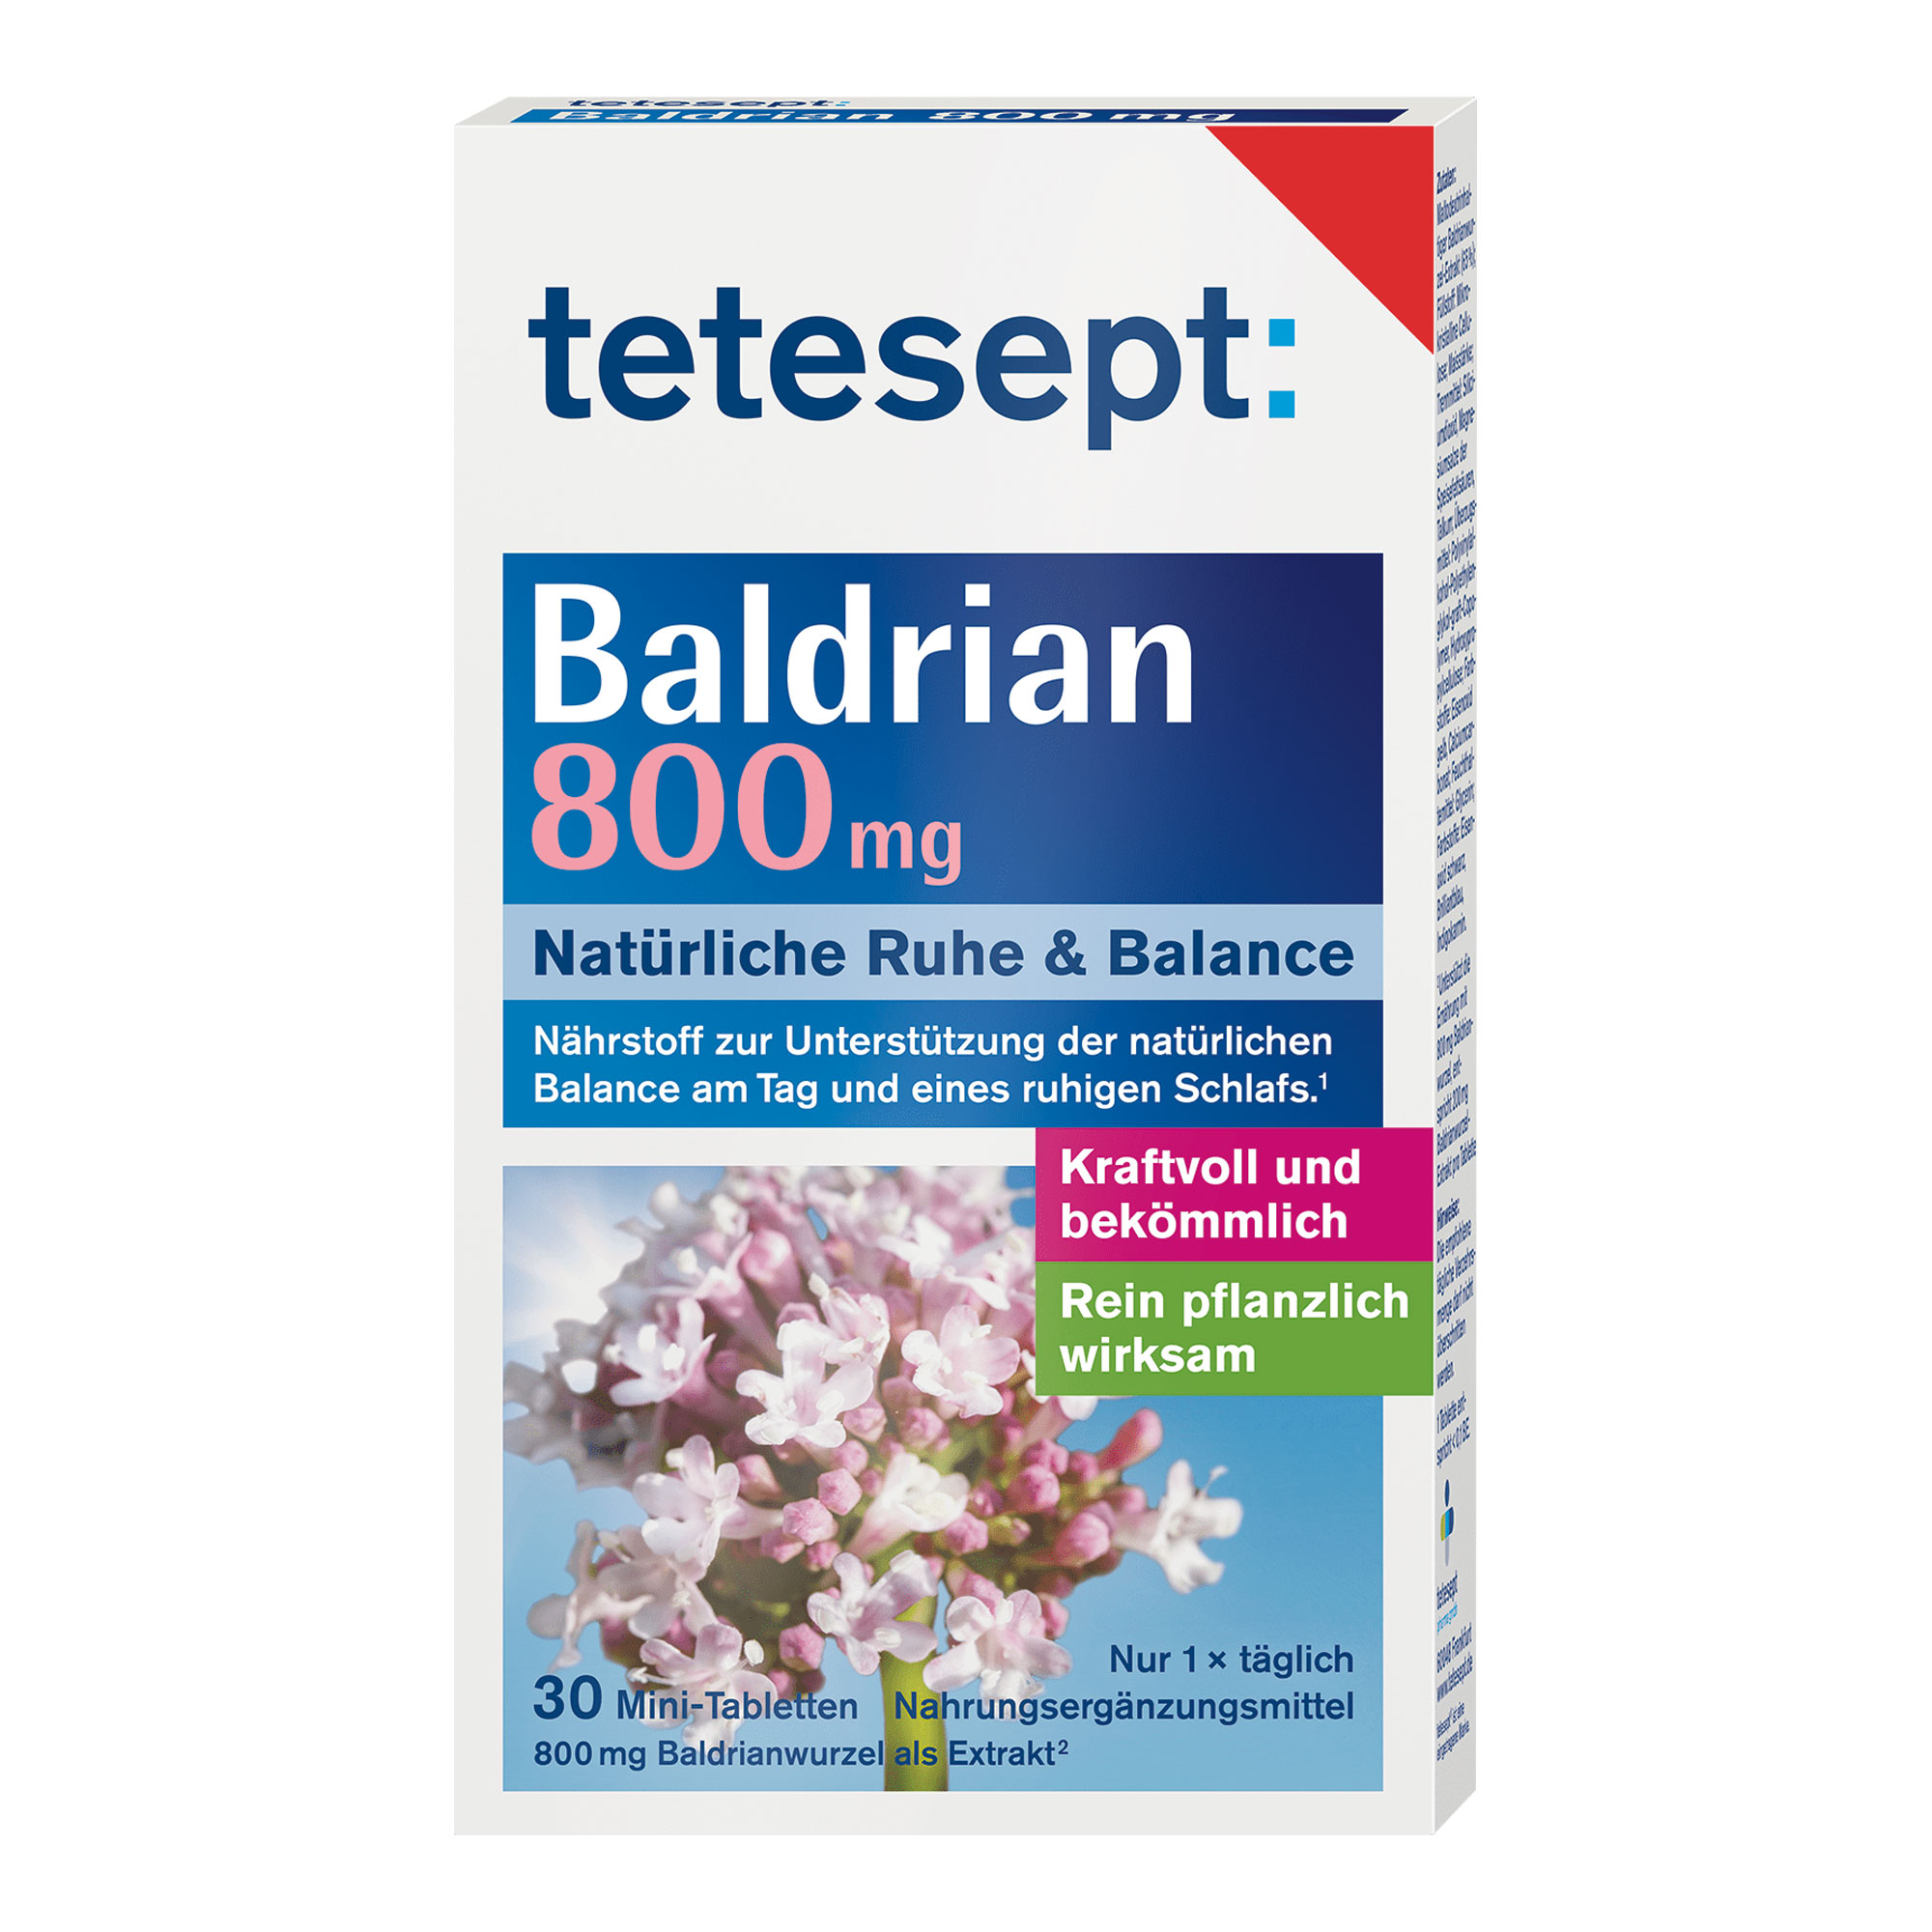 Nahrungsergänzungsmittel mit Baldrianwurzel-Extrakt in praktischer Mini-Tablette.